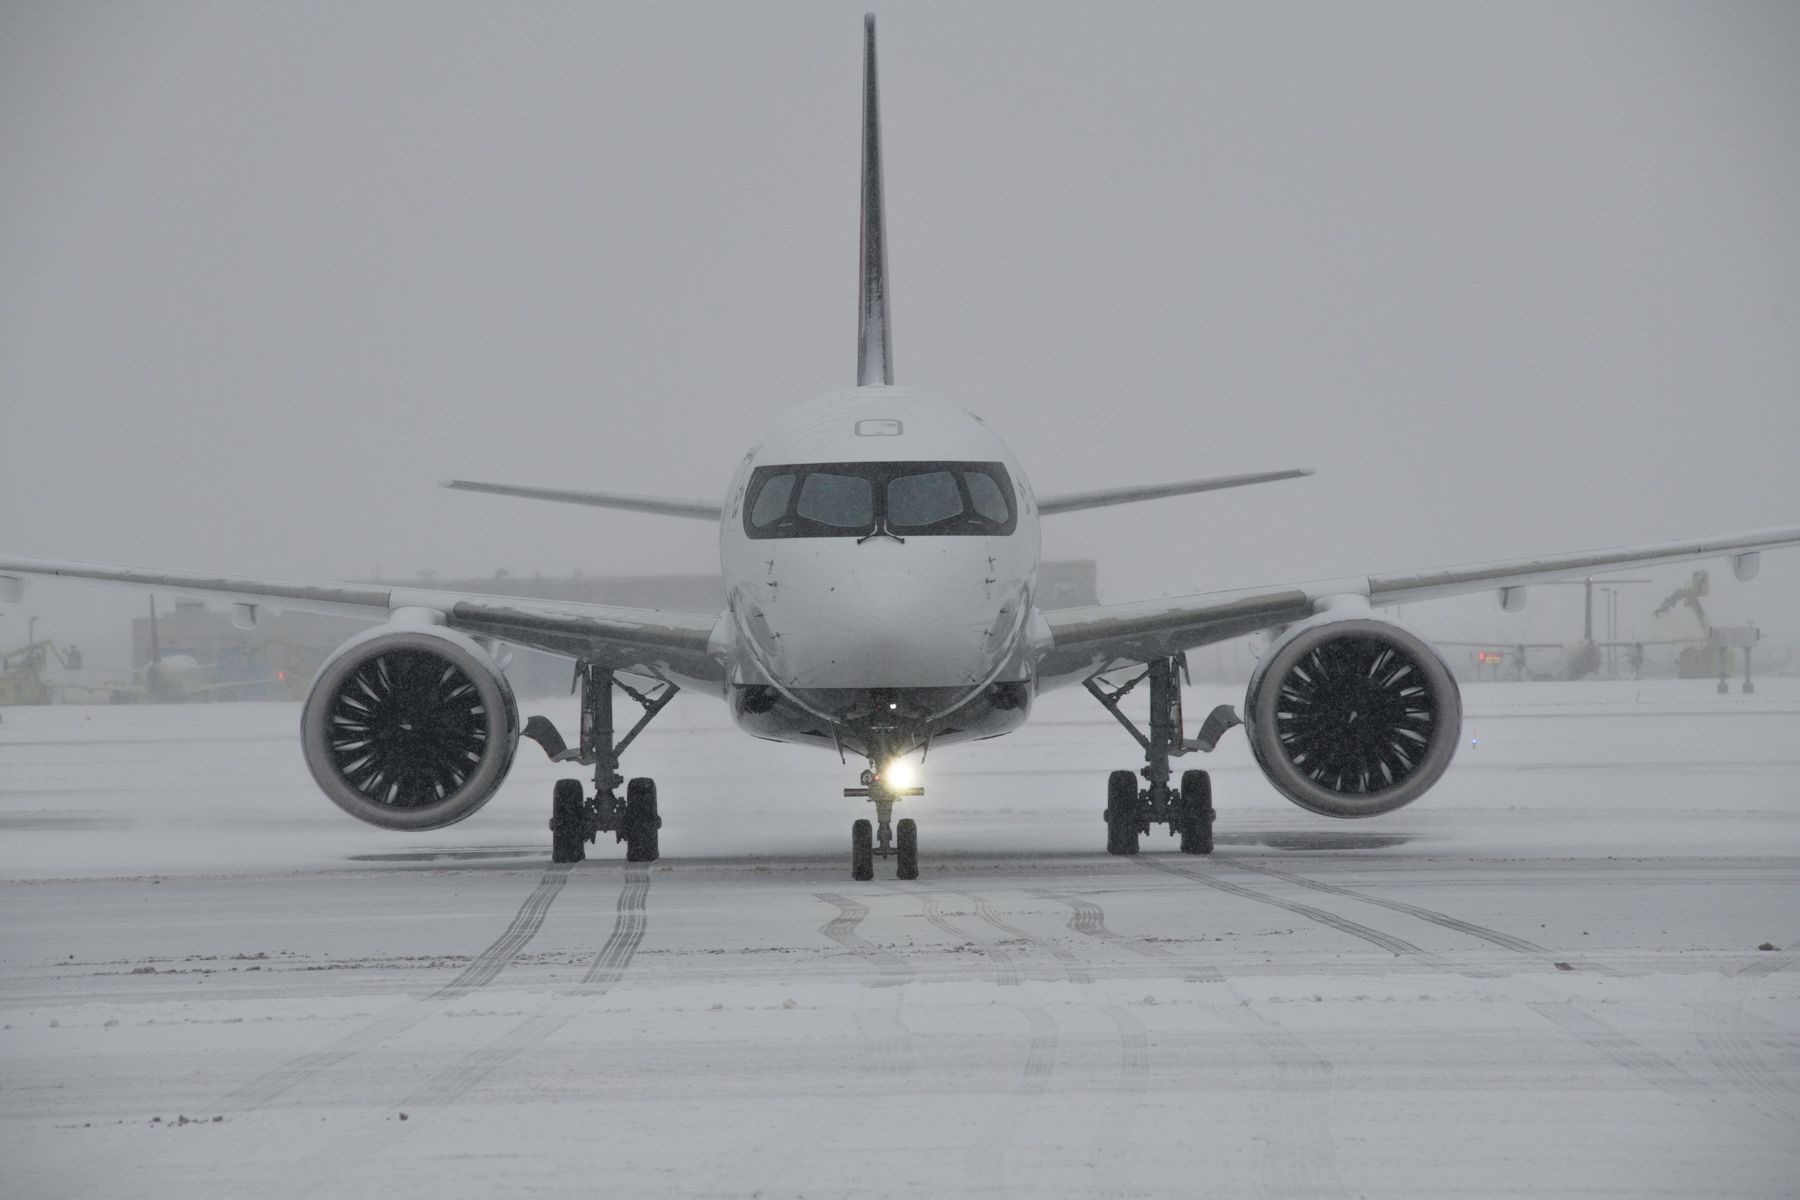 An Air Canada Airbus A220-300 in a snowy environment